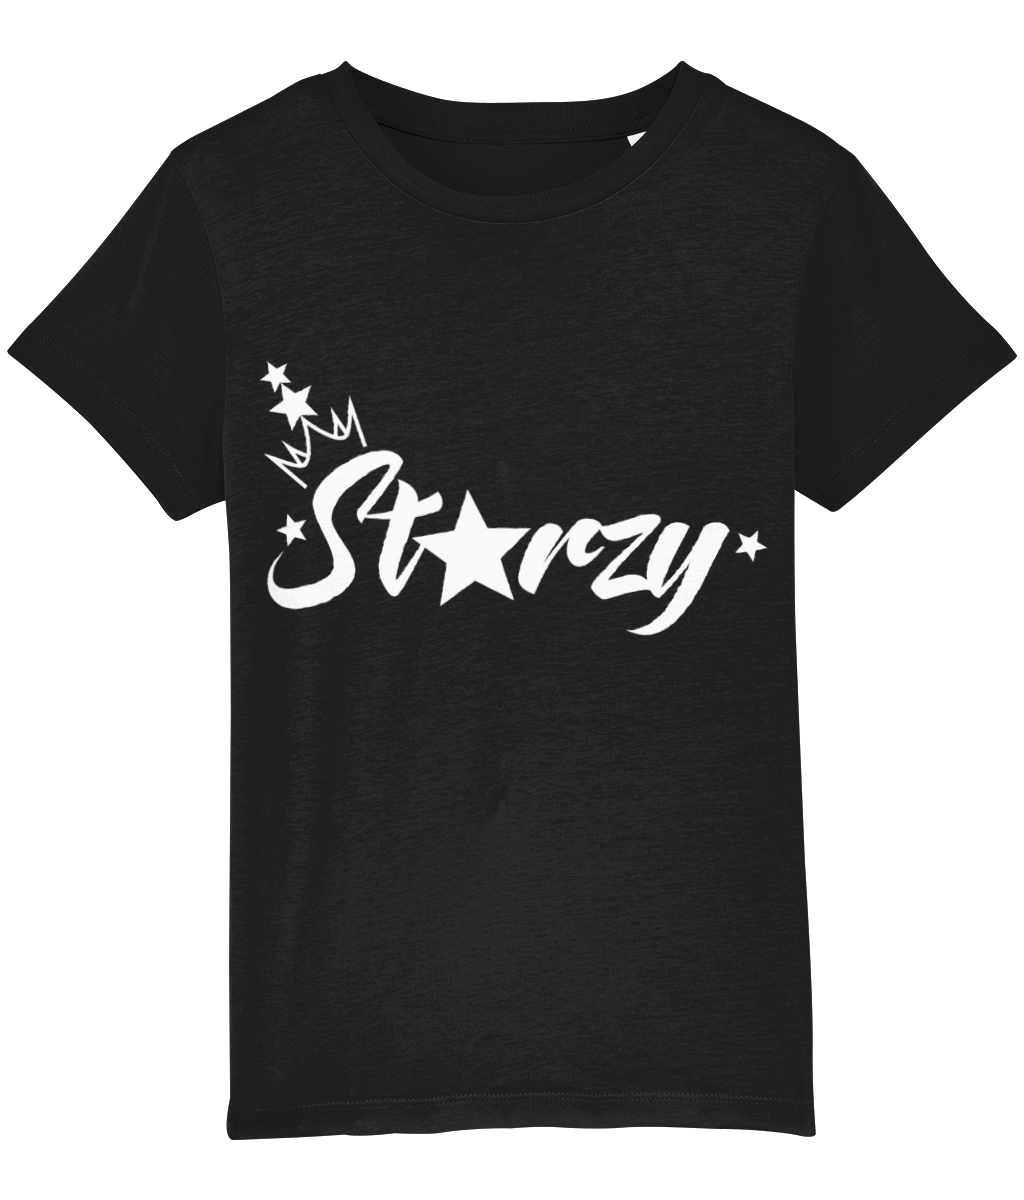 Anastarzia Anaquway - Starzy White Logo Kids T-Shirt - SNATCHED MERCH